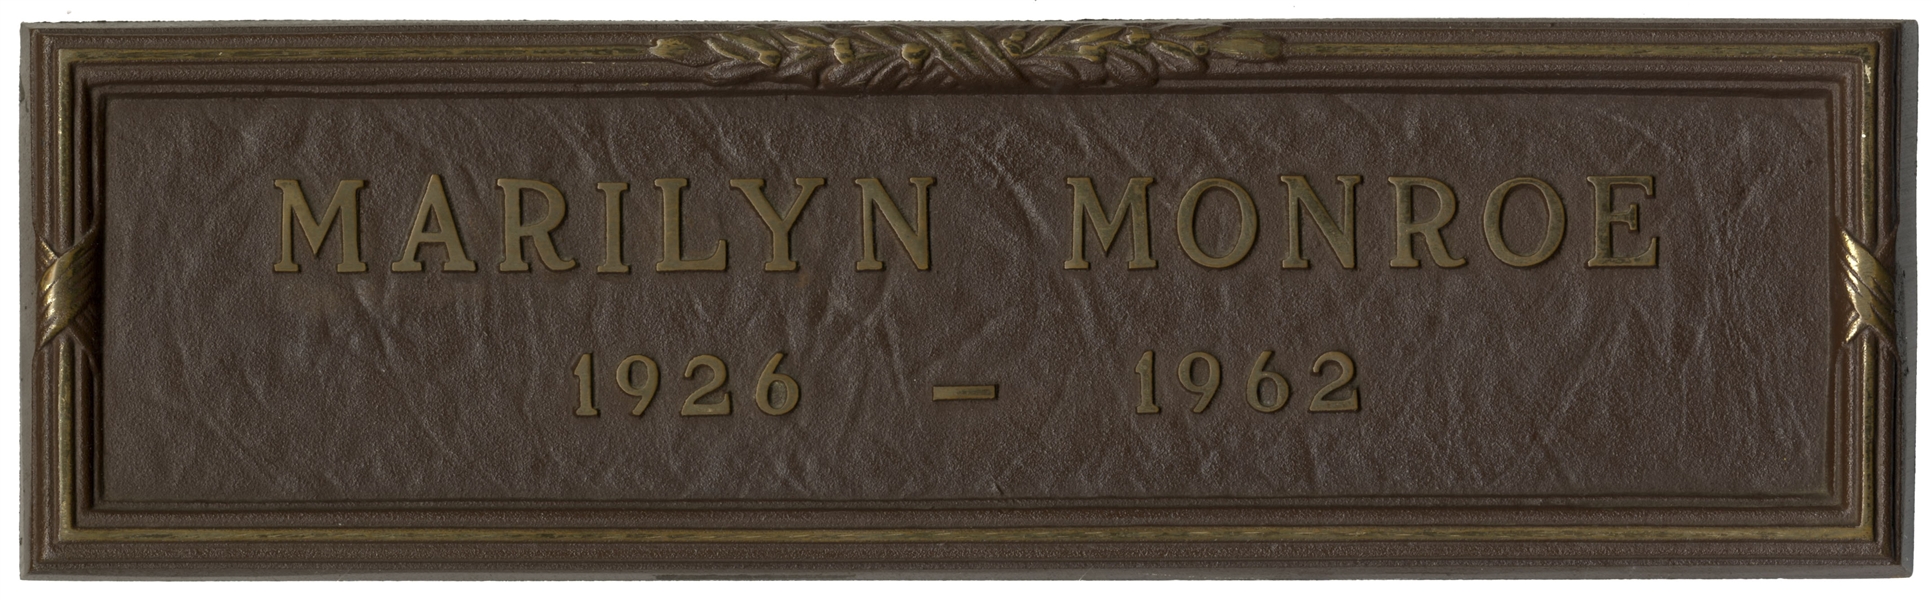 Marilyn Monroe's Grave Marker